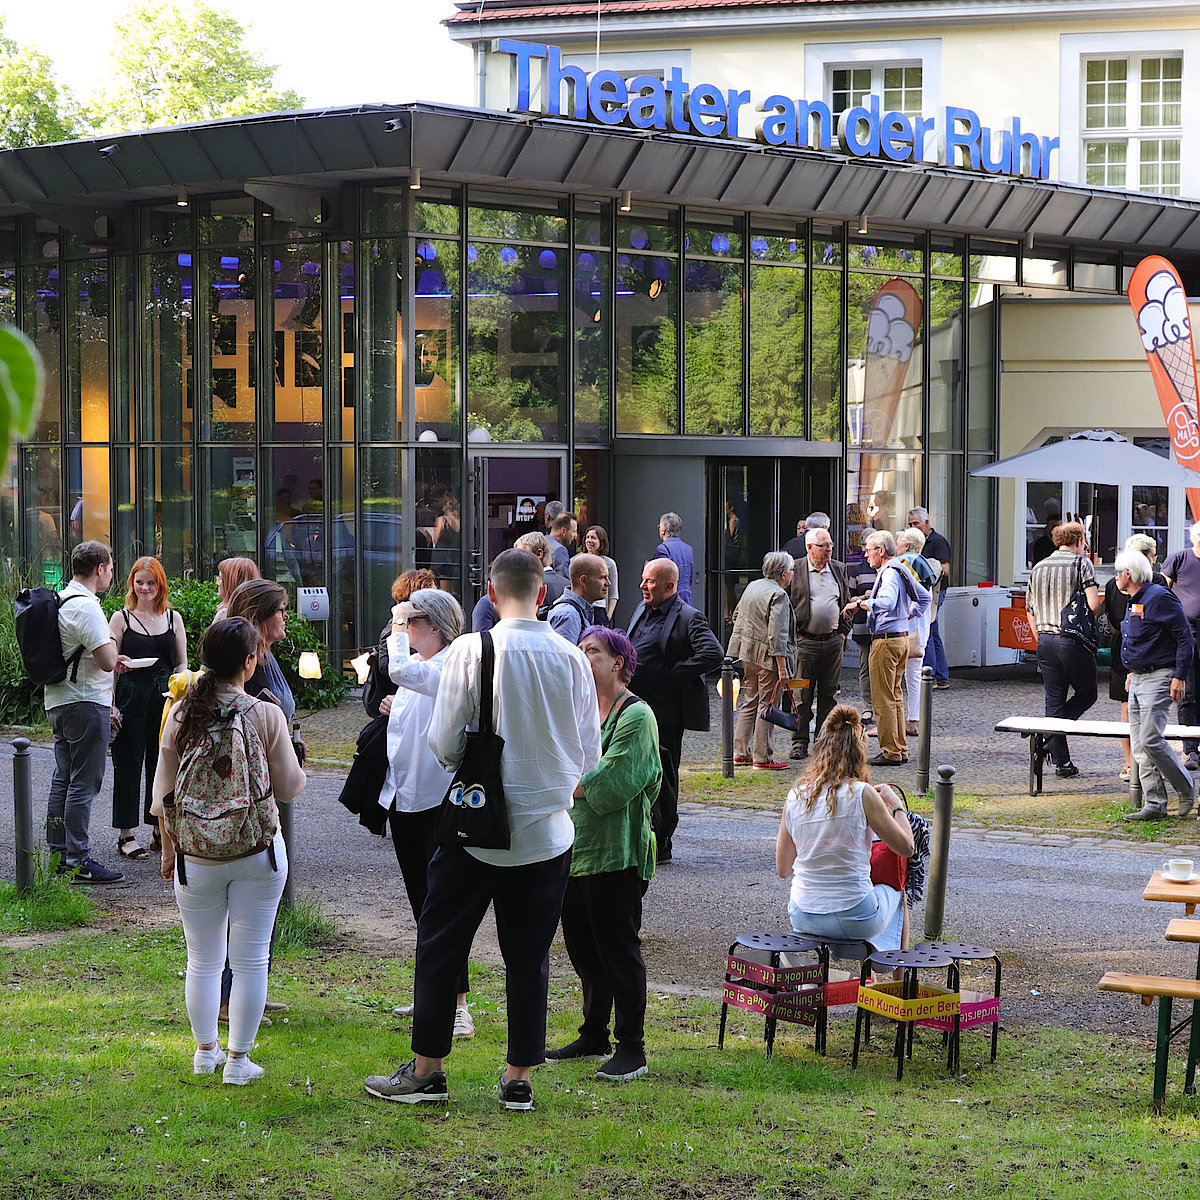 Foto von der Abschlussfeier des Festivals "Stuecke" vor dem Theater an der Ruhr. Man sieht Menschen, die sich in kleinen Gruppen mit einem Glas in der Hand unterhalten.